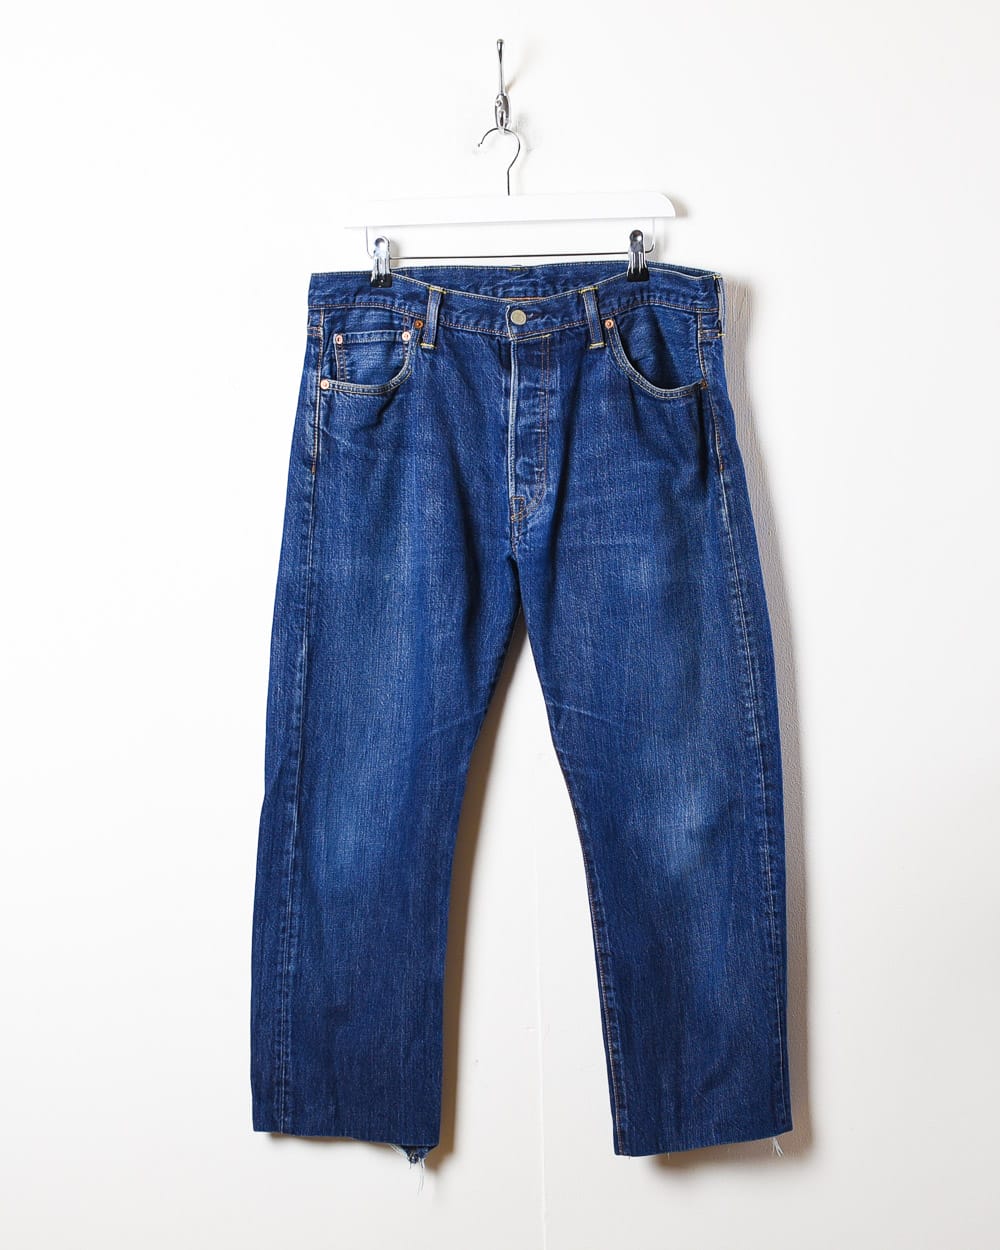 Blue Levi's 501 Jeans - W36 L27